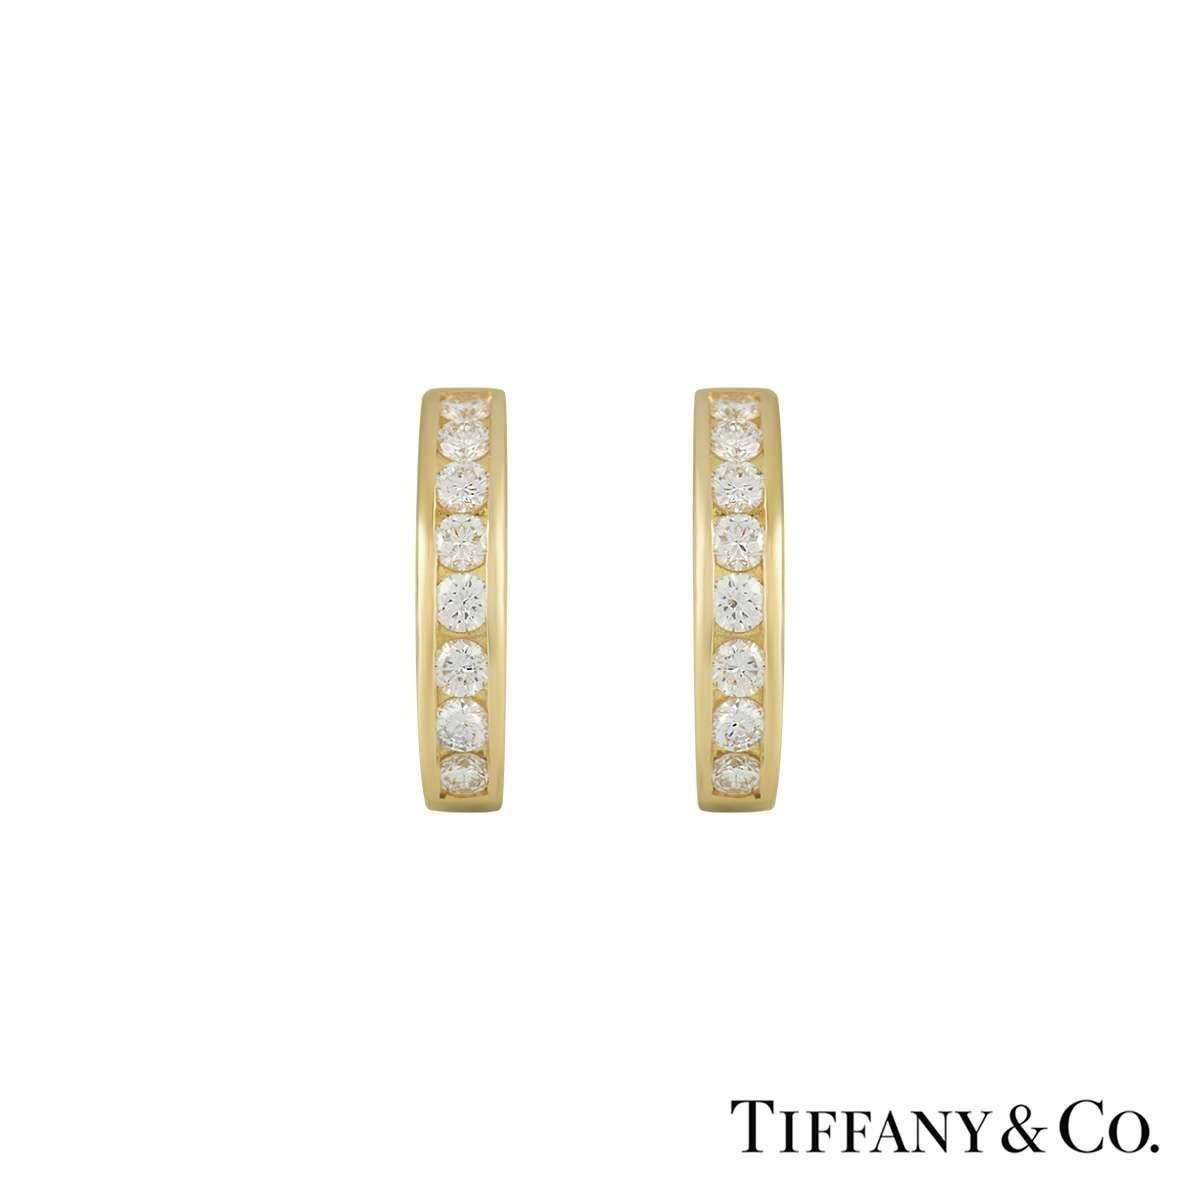 Ein schönes Paar diamantbesetzte Ohrringe von Tiffany & Co. Die Reifchen sind mit 8 Diamanten in jedem Reifchen besetzt und haben insgesamt etwa 0,96ct. Die Ohrringe sind mit einem Stift- und einem Clipverschluss versehen und messen 18 mm in der